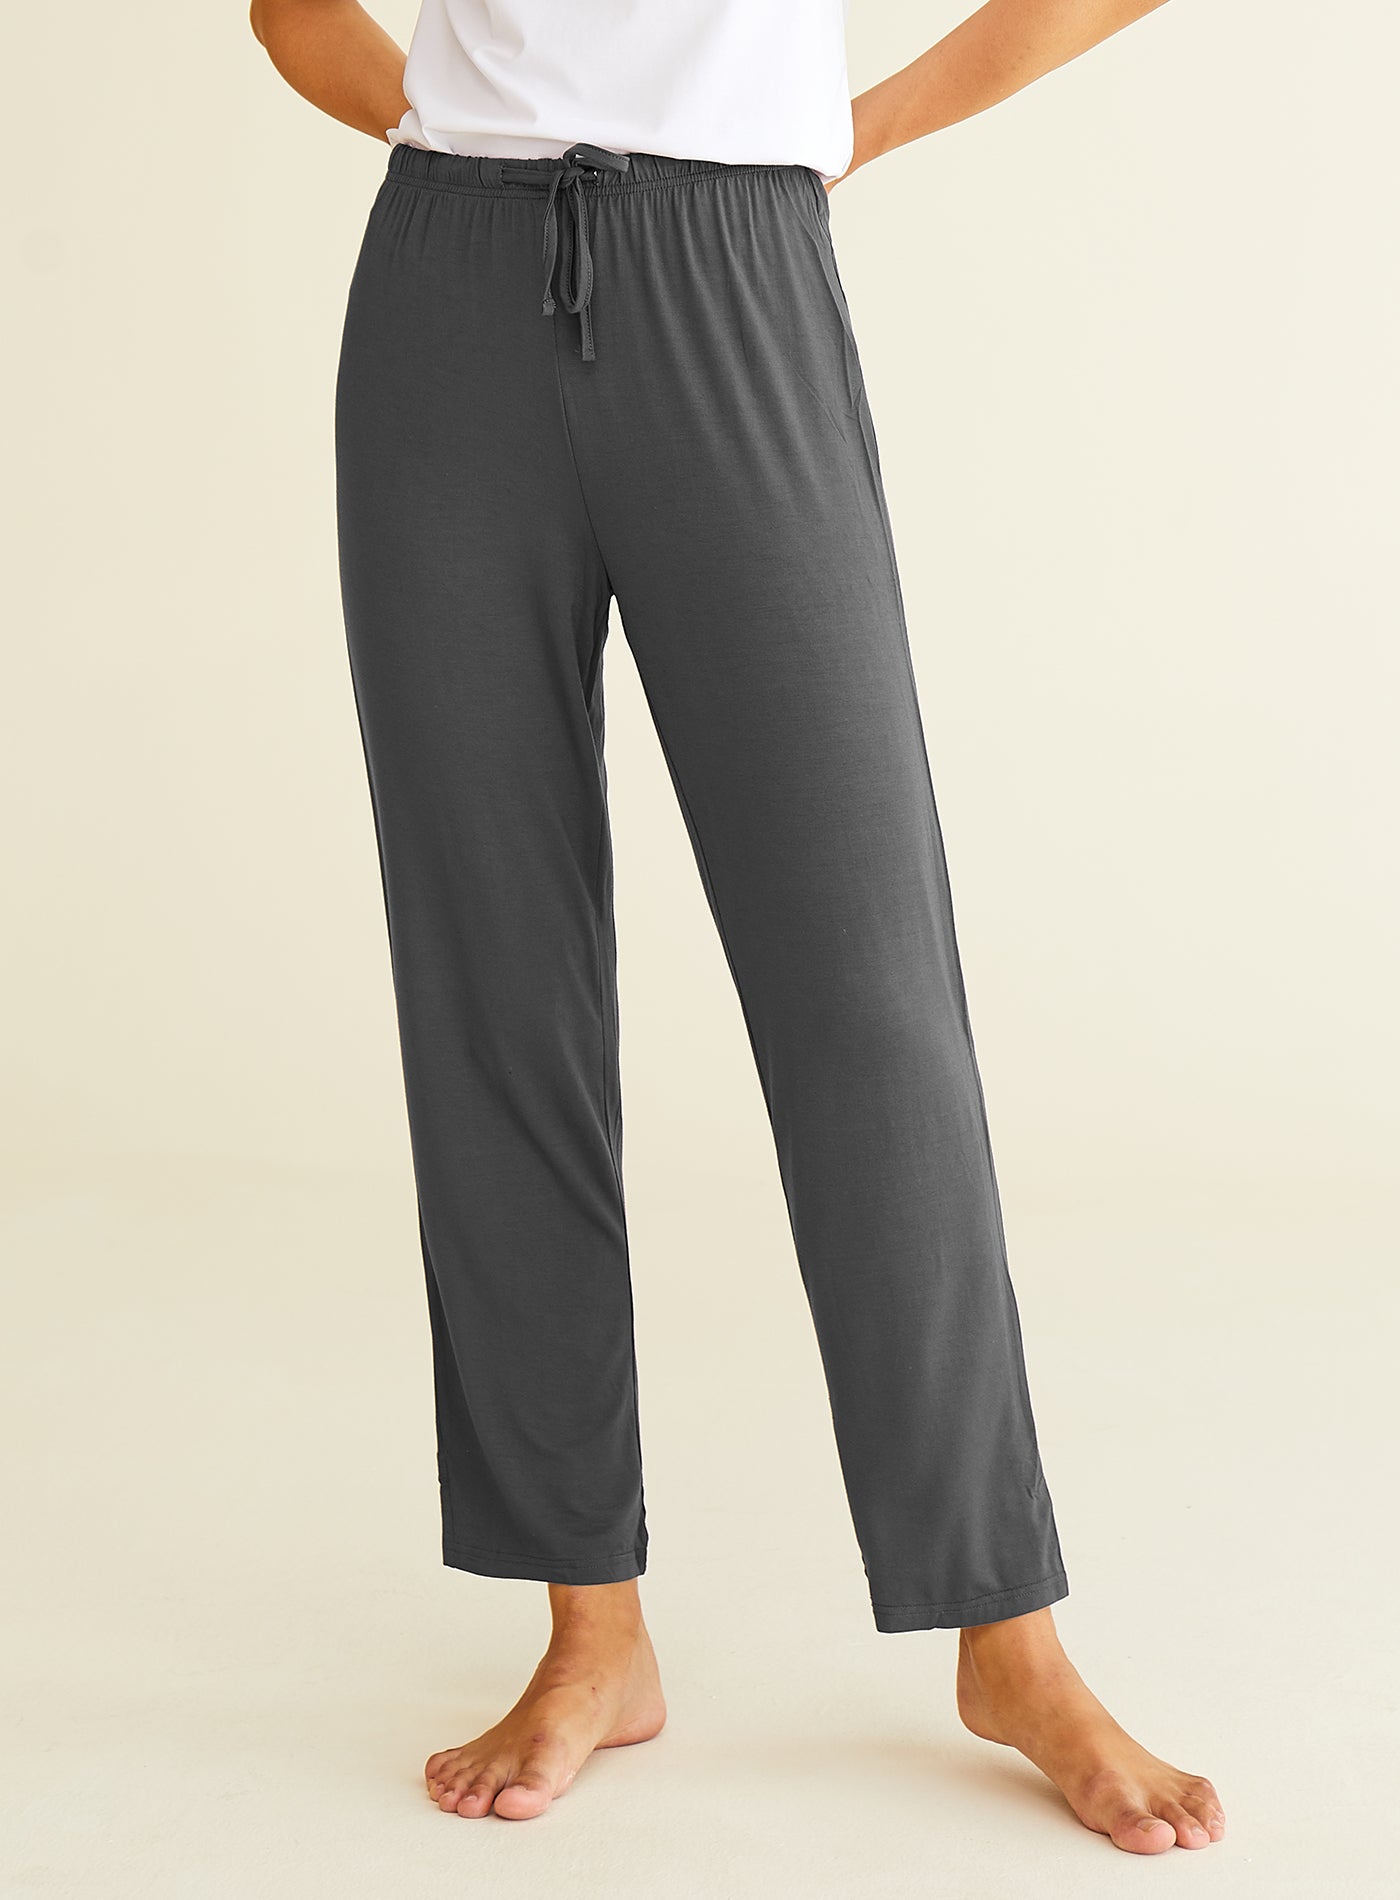 Men's Knit Cotton Lounge Pajama Pants – Latuza